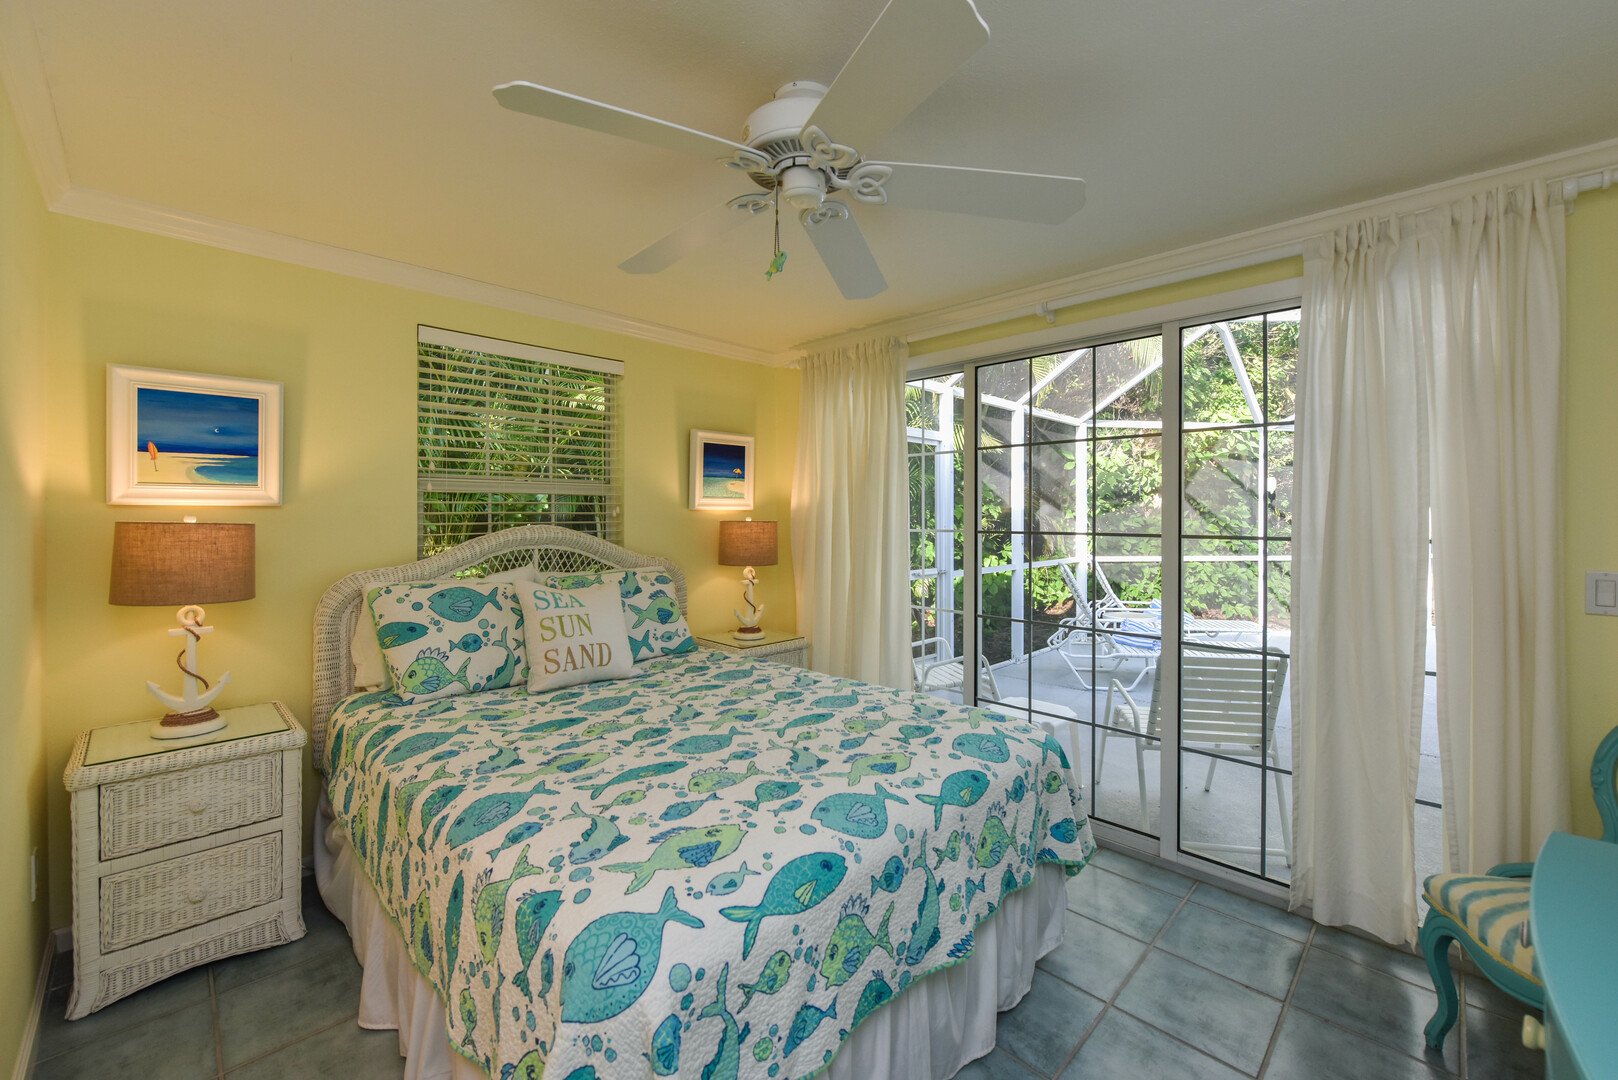 Rest Assured guest bedroom view from doorway with slider door access to pool area